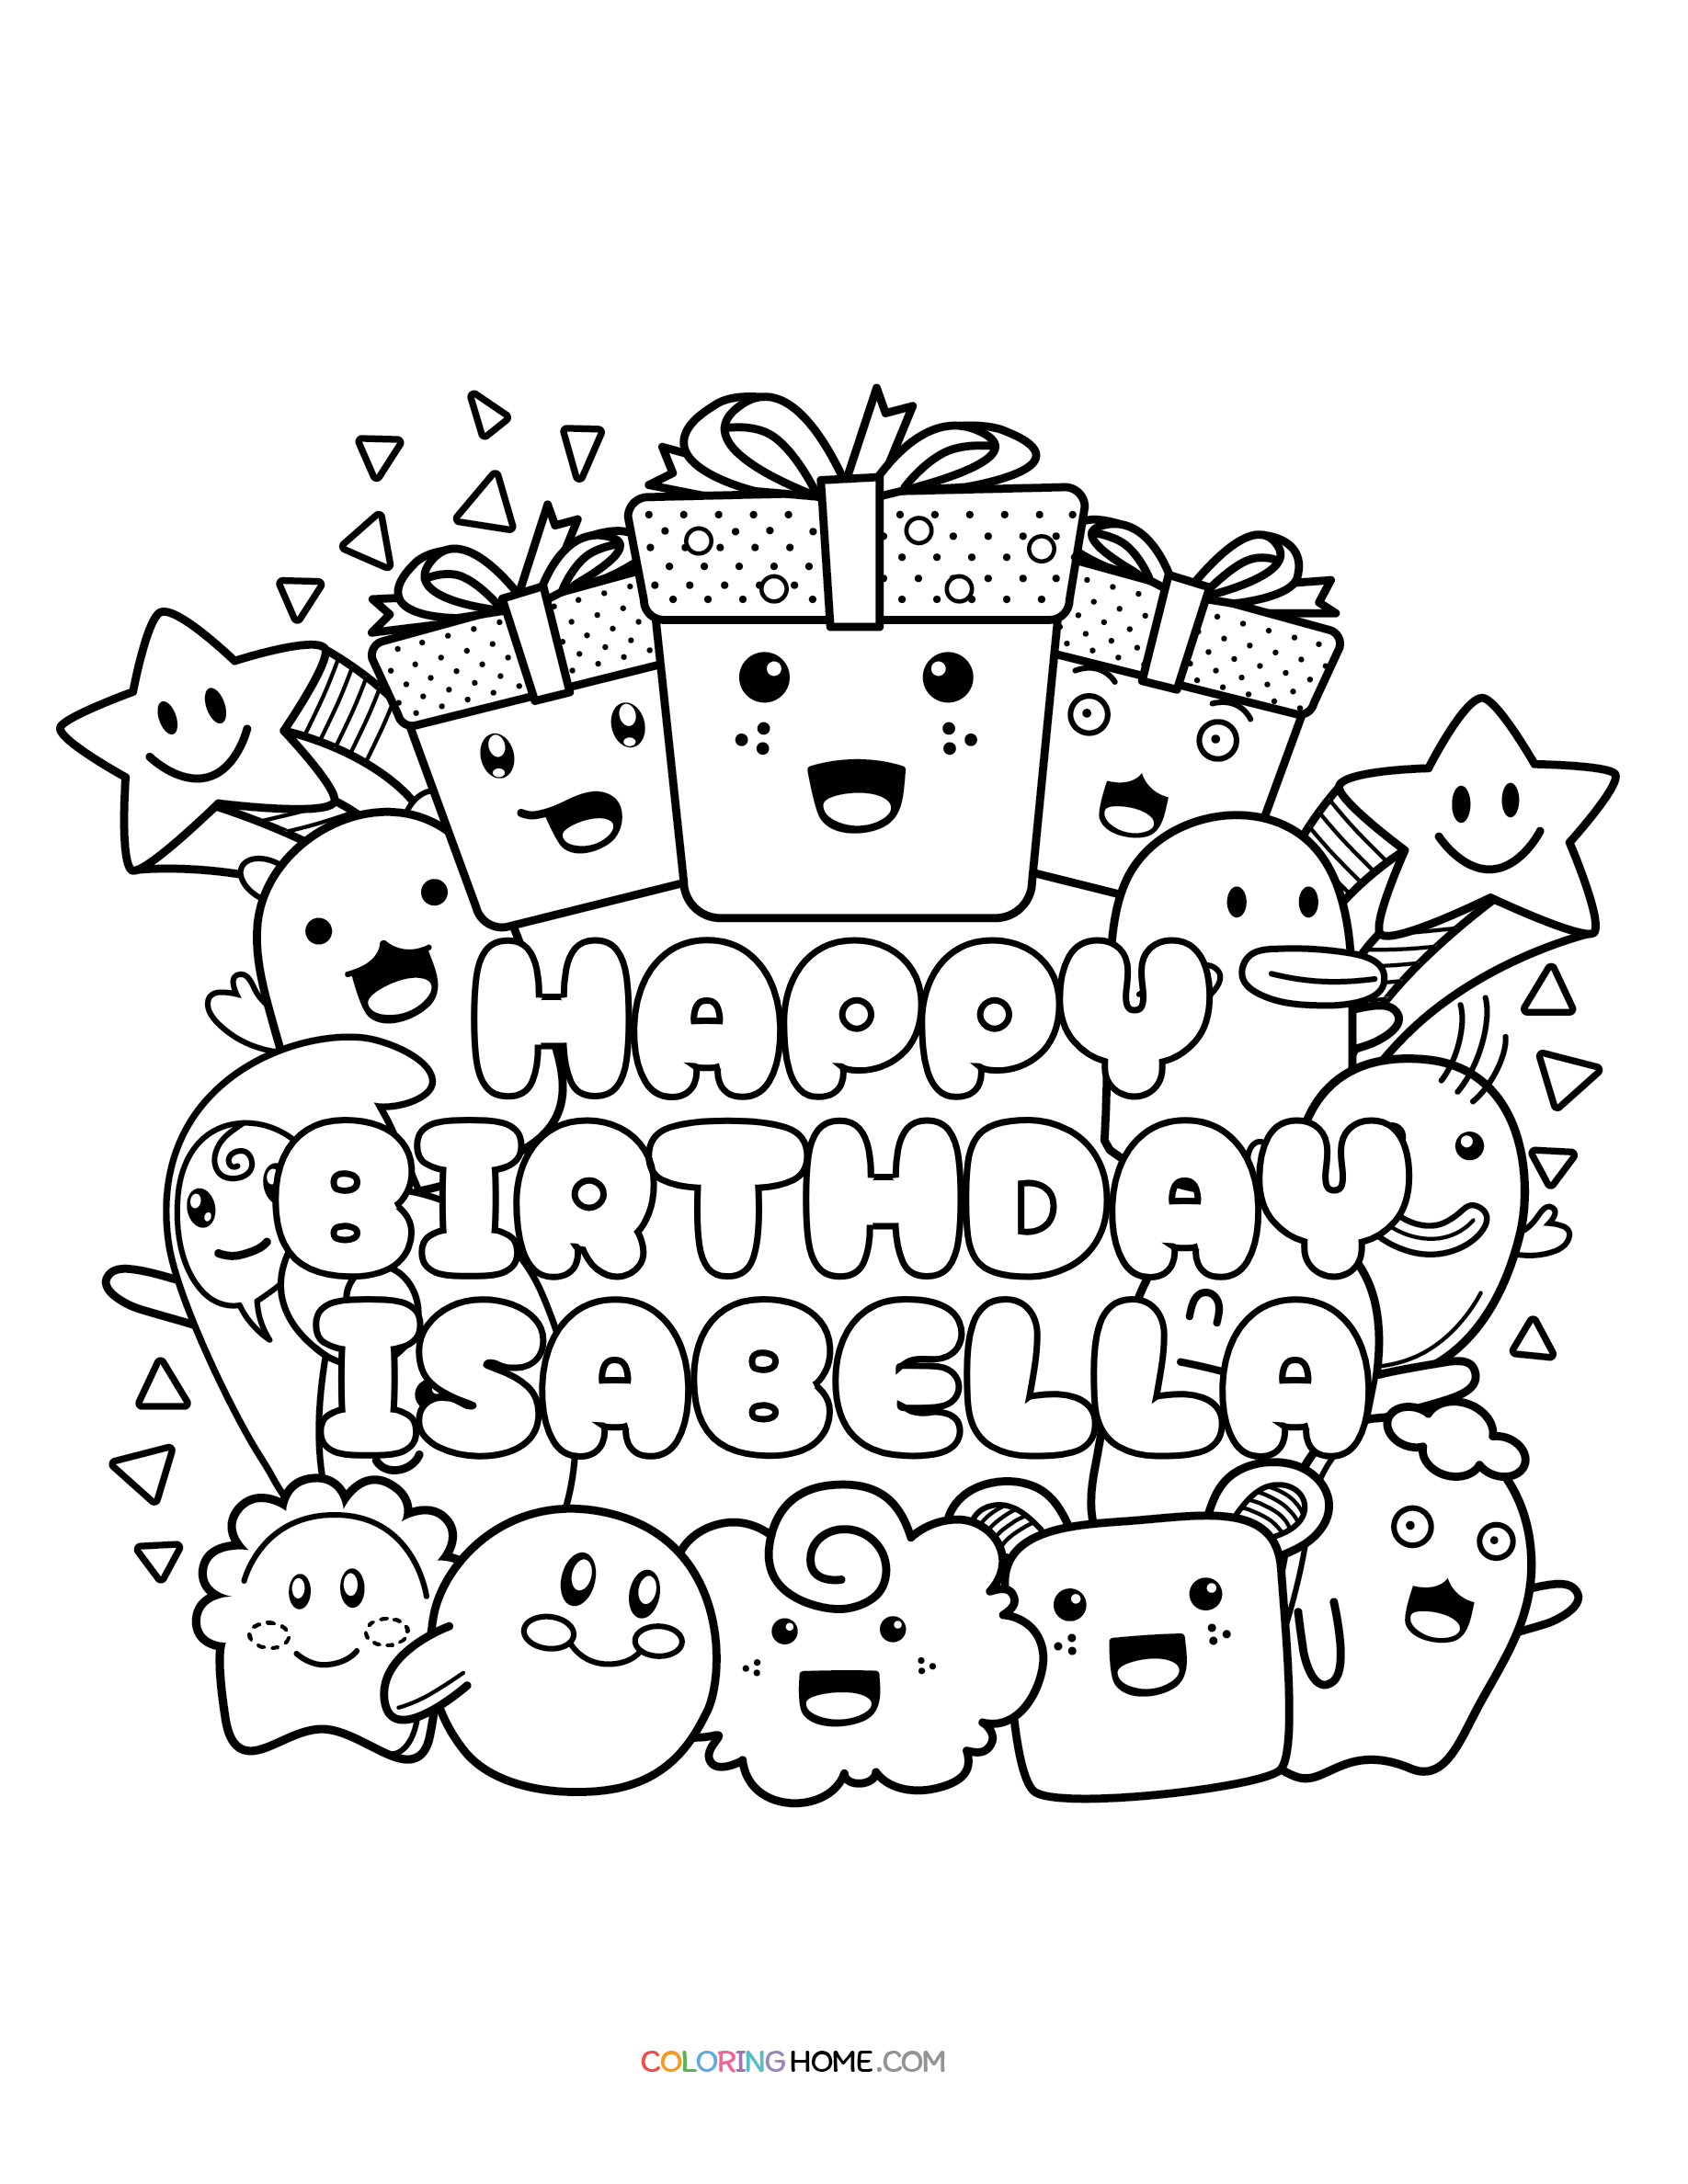 Happy Birthday Isabella coloring page